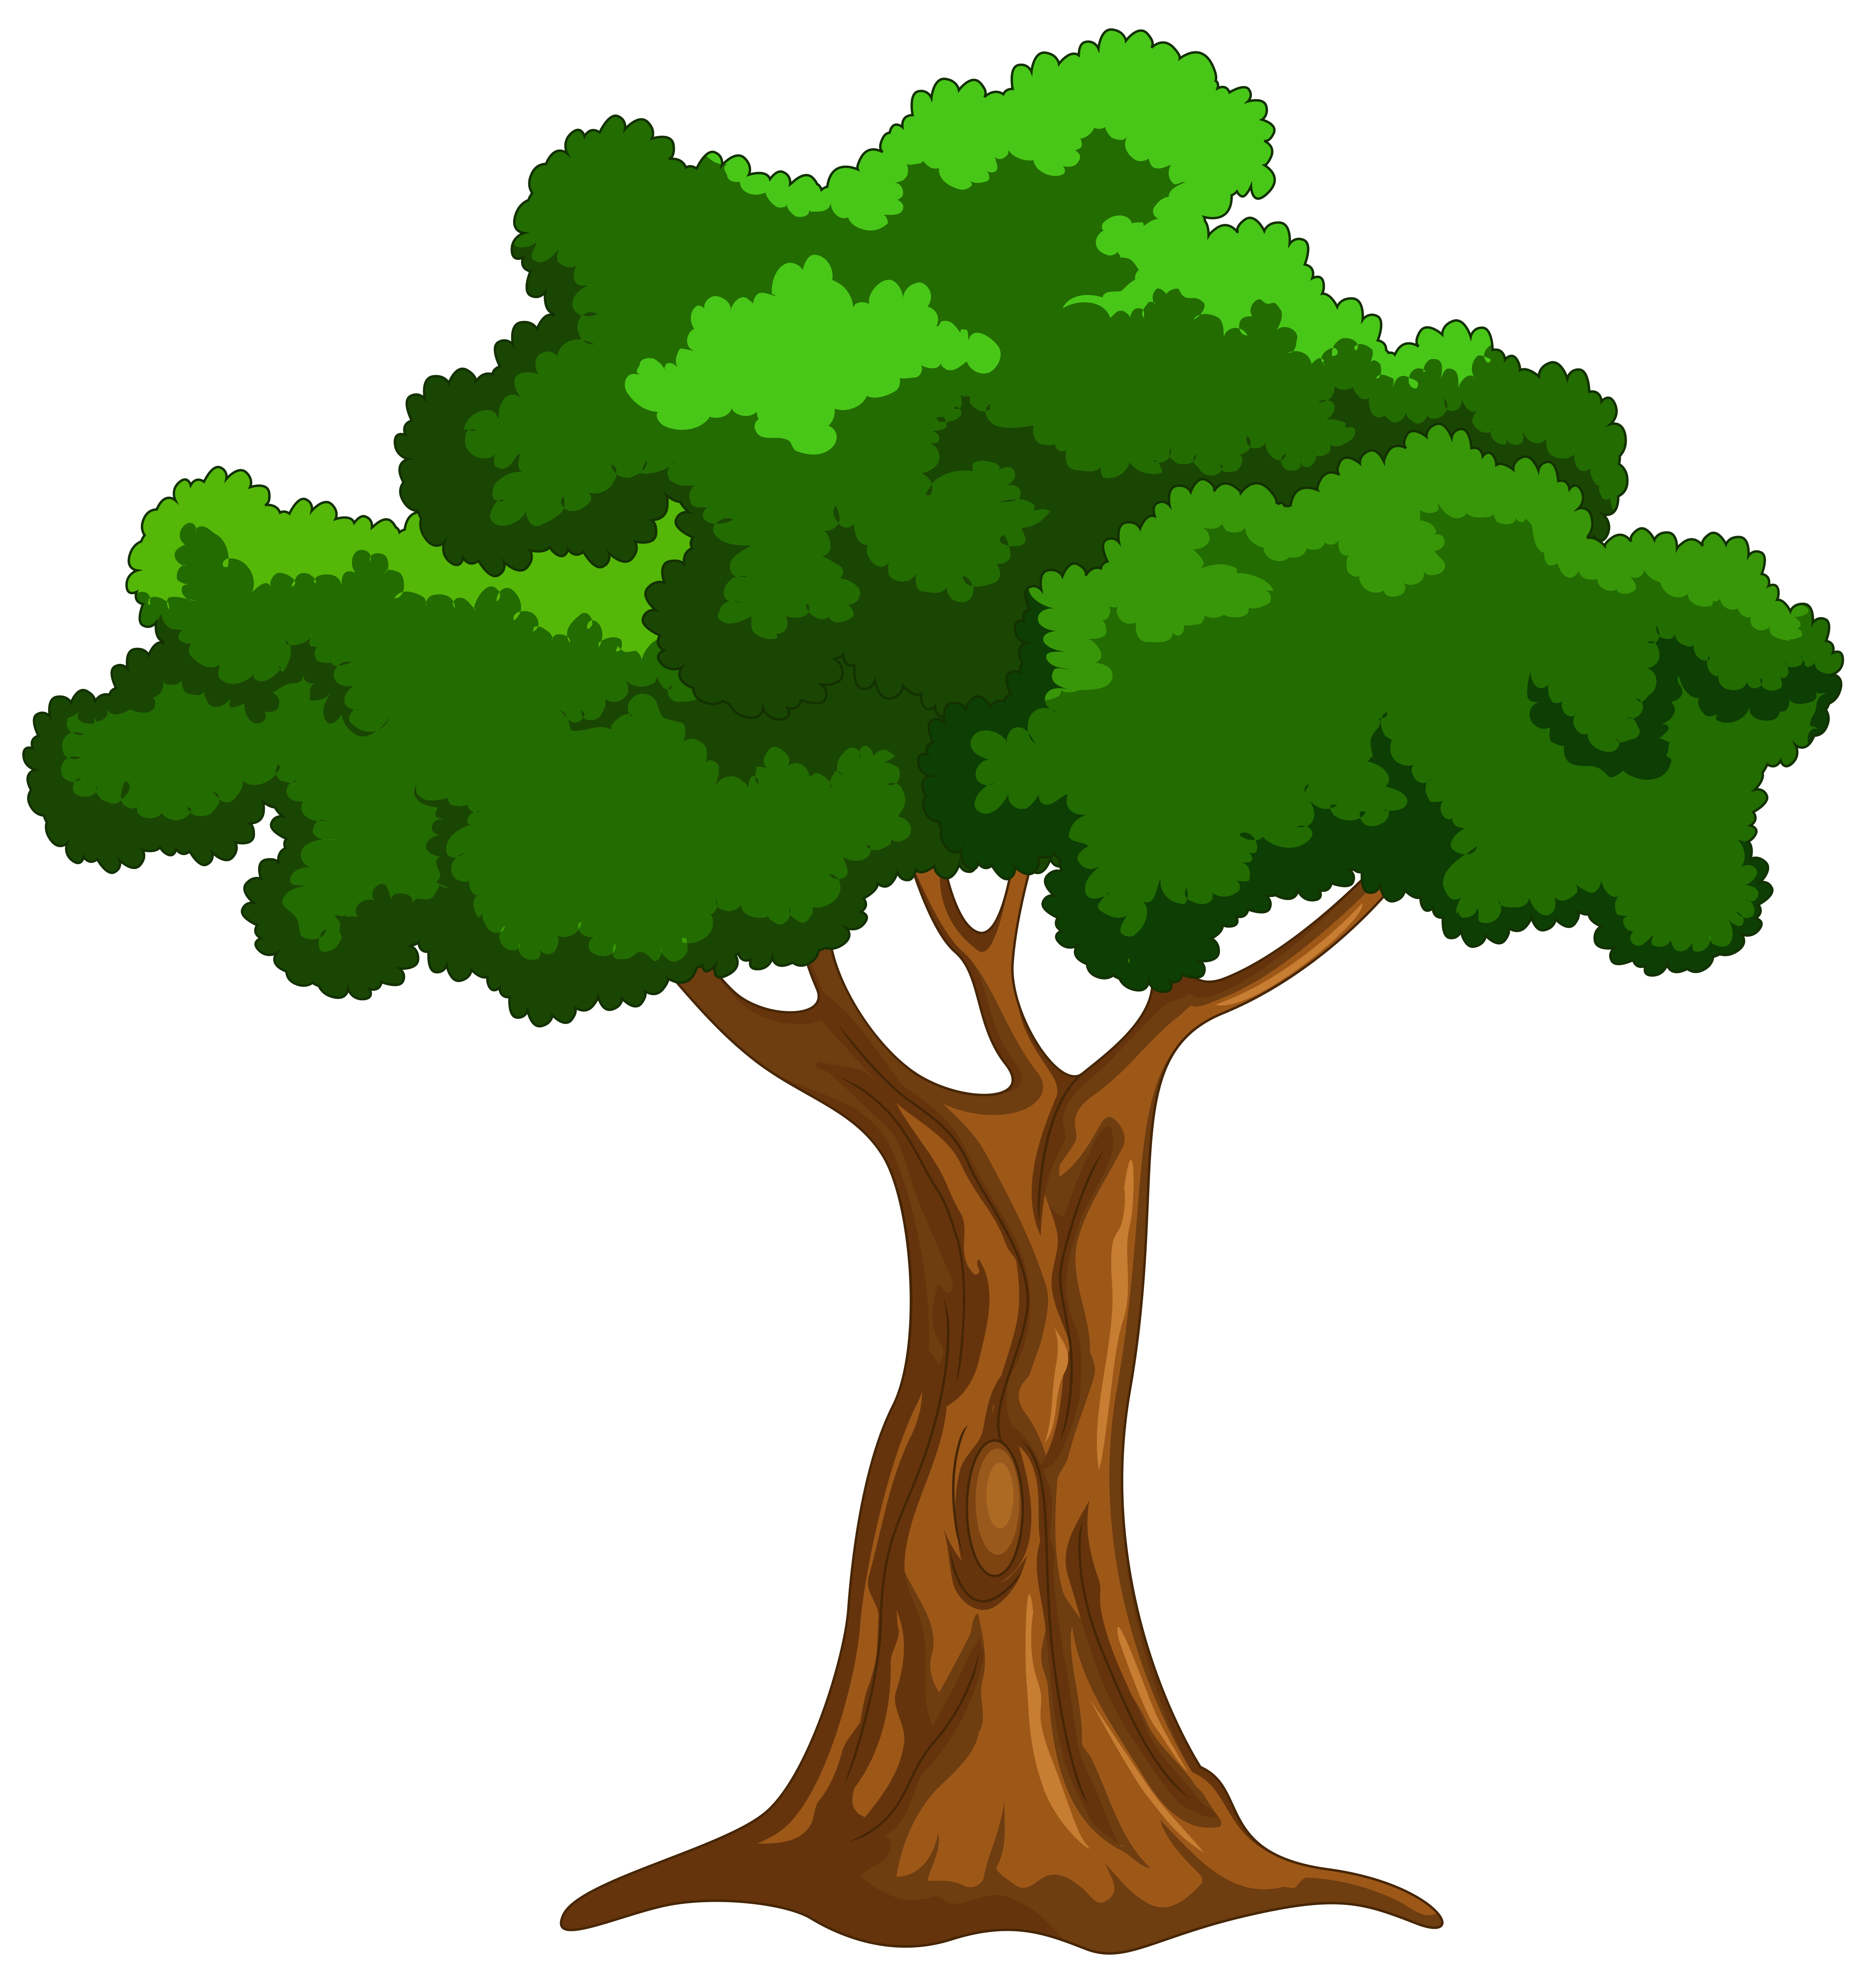 Cartoon Trees Wallpapers - Top Những Hình Ảnh Đẹp